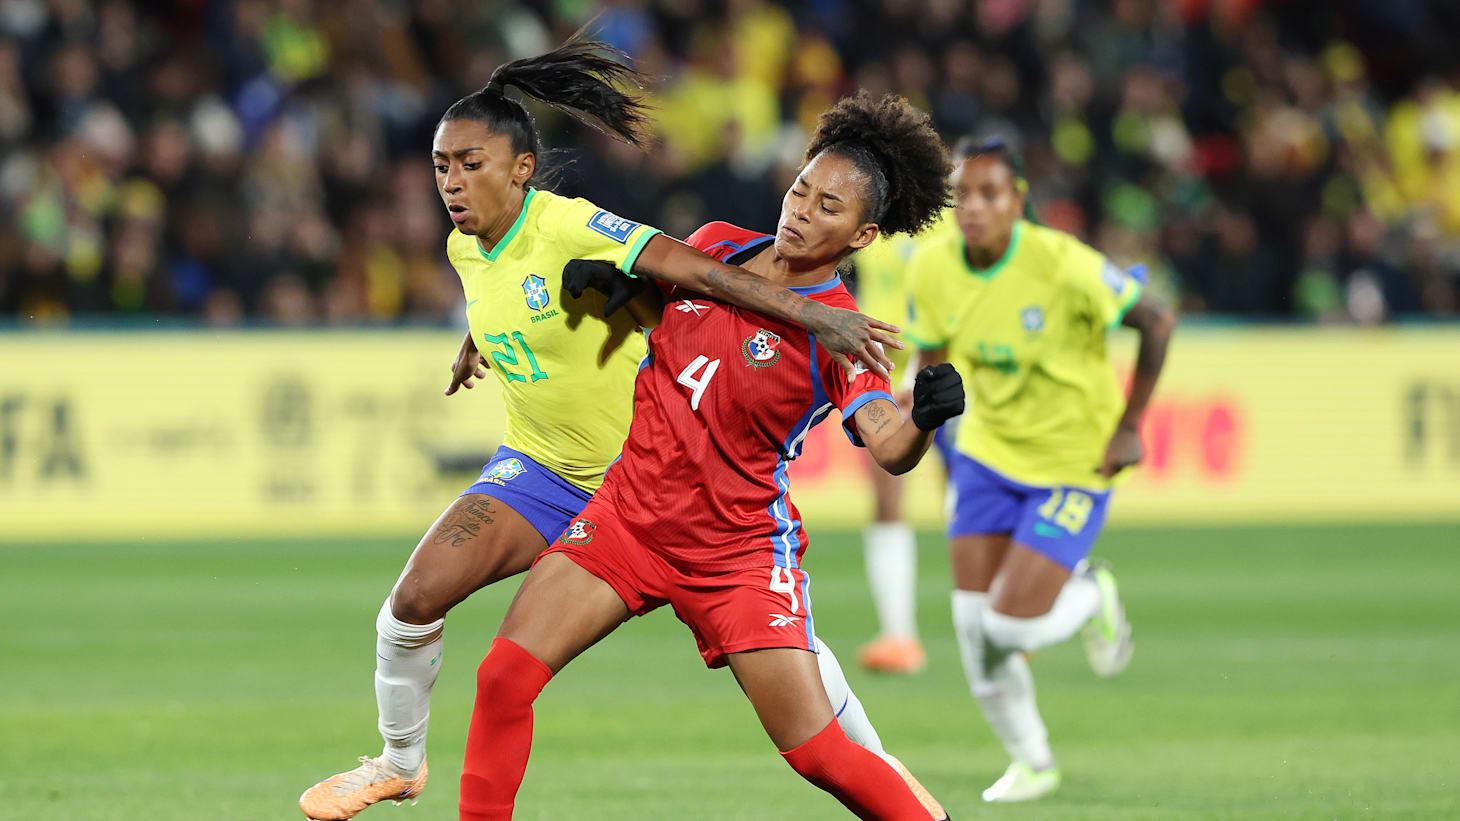 Costa Rica x Zâmbia, Grupo C, Copa do Mundo FIFA Feminina de 2023, em  Austrália e Nova Zelândia, Jogo completo